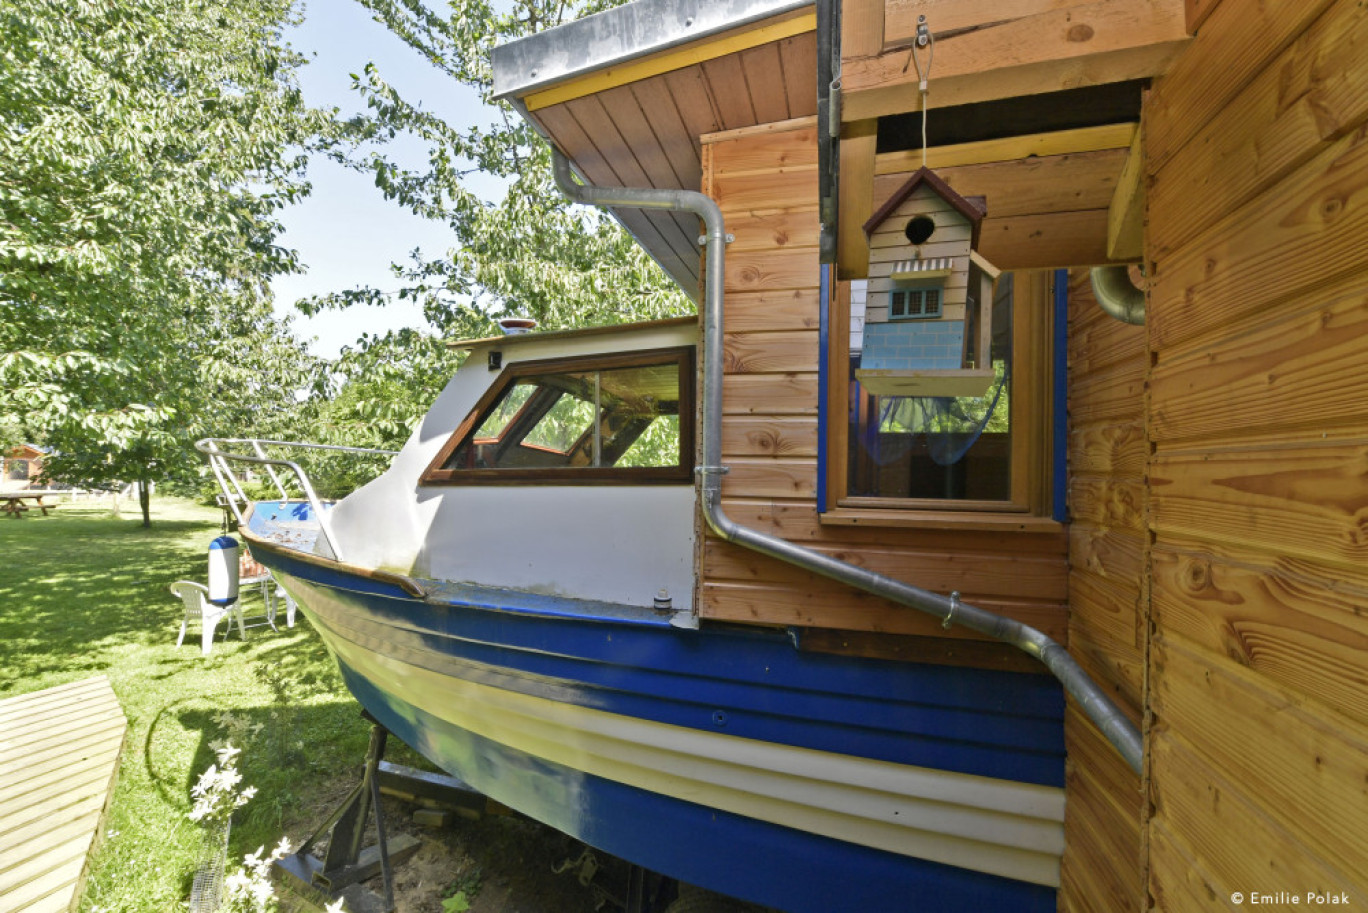 Dernier logement insolite installé, Le Dom' invite à prendre le large dans un océan de verdure. © Wonderbox/Émilie Polak